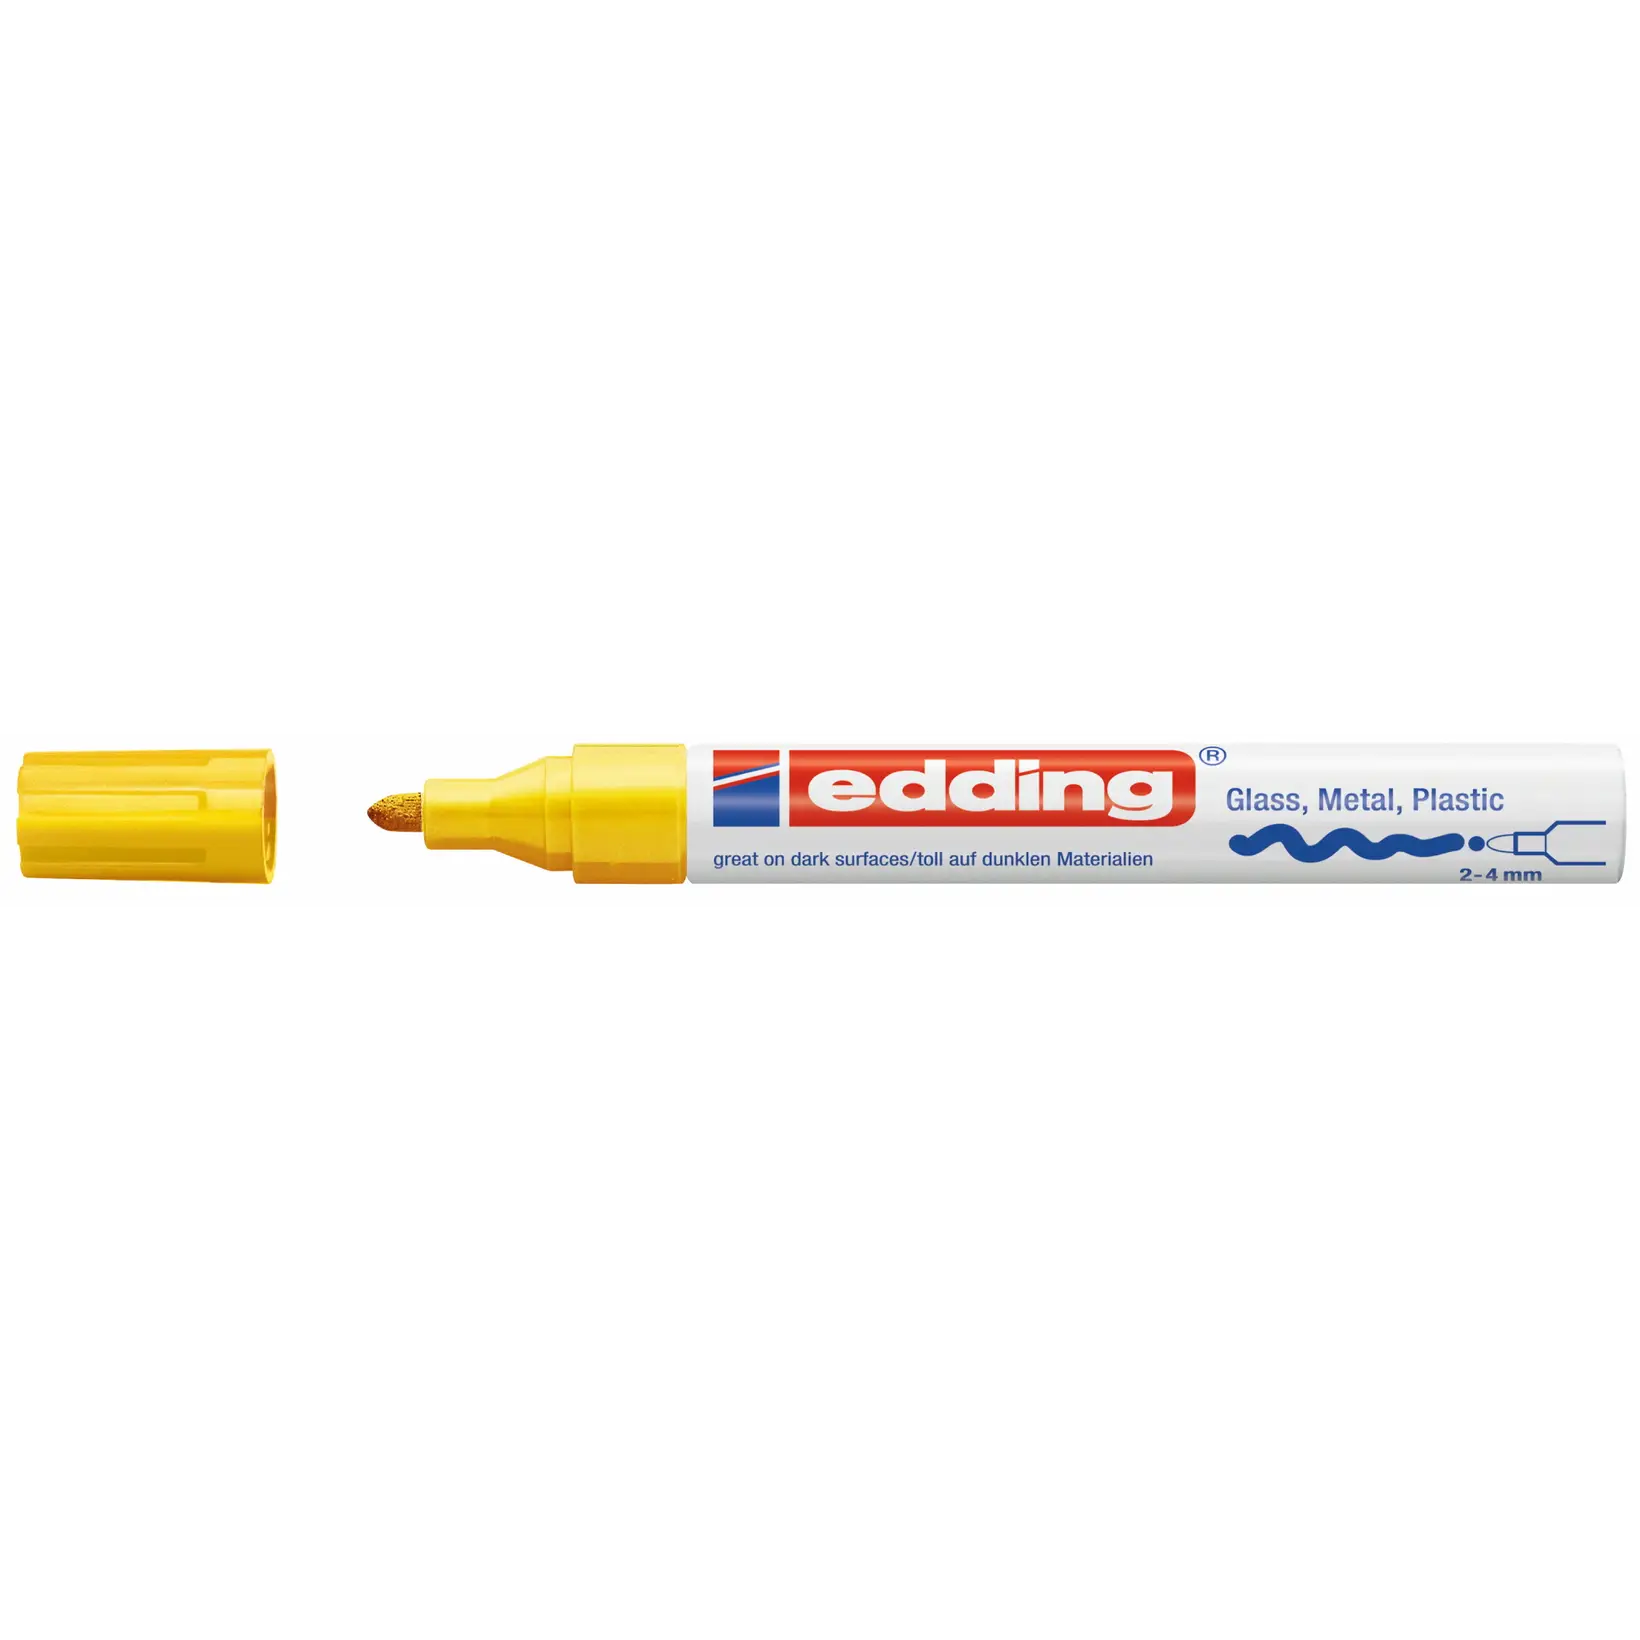 Edding 750 - Permanent gul marker 2 - 4 mm - 10 stk - Køb billigt